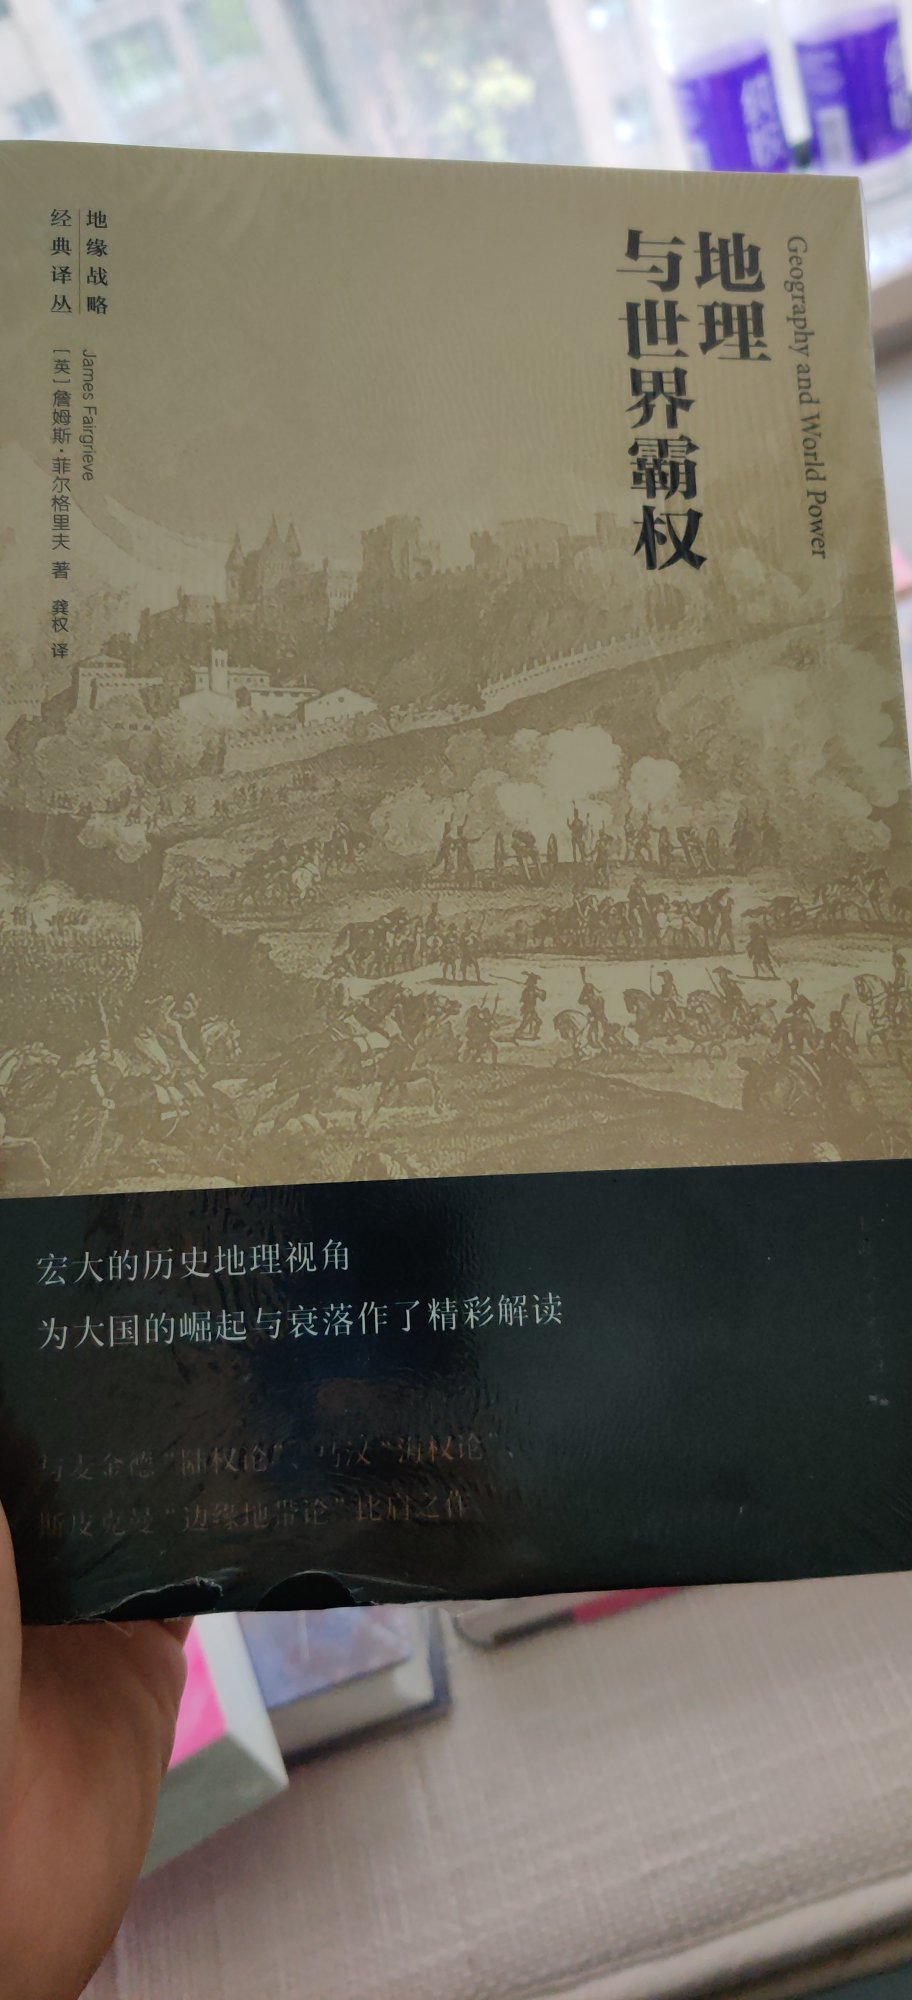 上海人民这套国际政治的书好评。